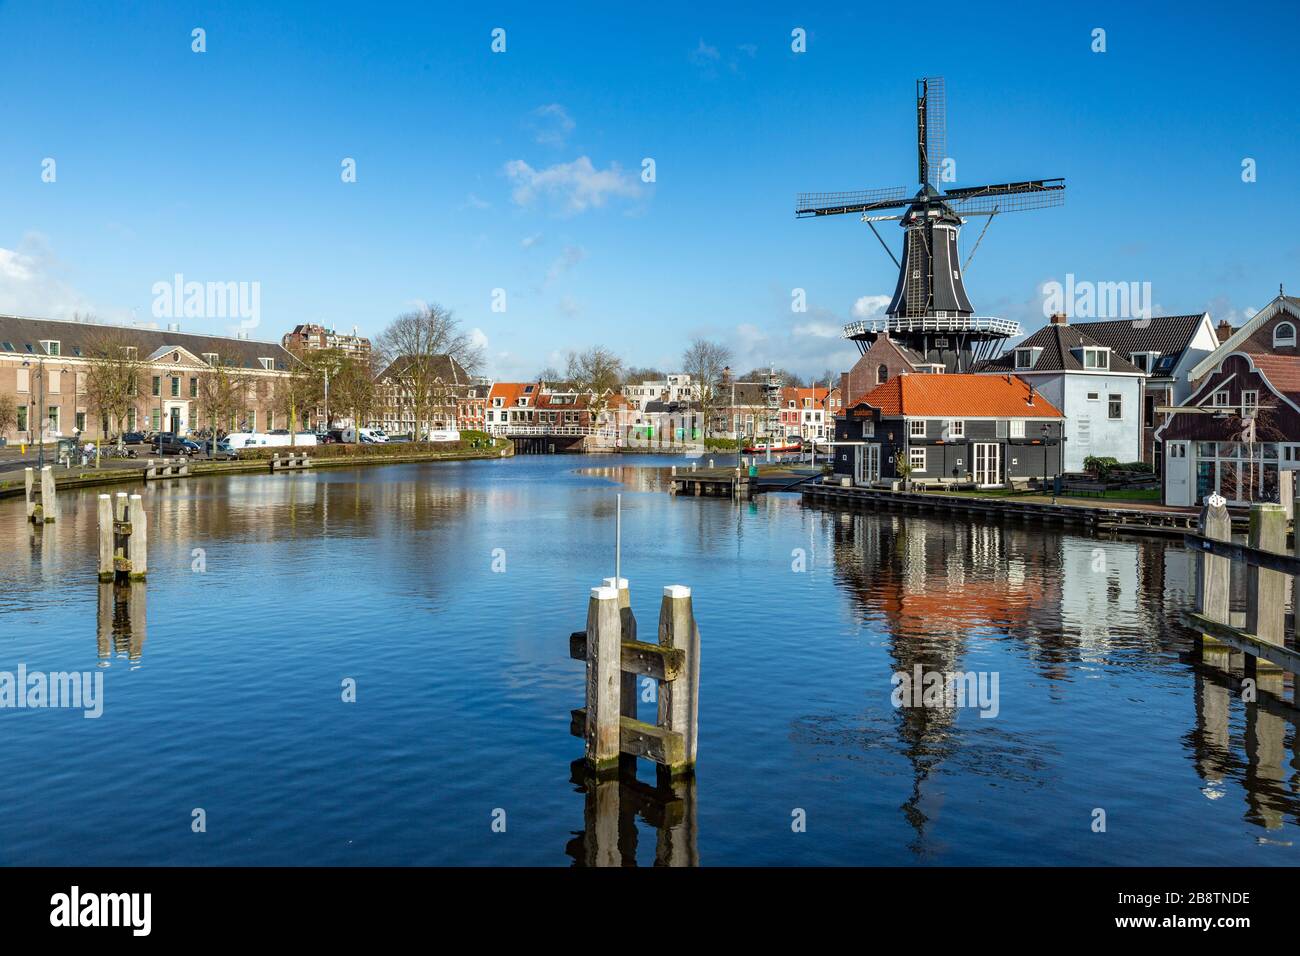 De Adriaan ist eine Windmühle in Haarlem, Niederlande, die 1932 abbrannte und 2002 wieder aufgebaut wurde. Die ursprüngliche Windmühle stammt aus dem Jahr 1779. Stockfoto